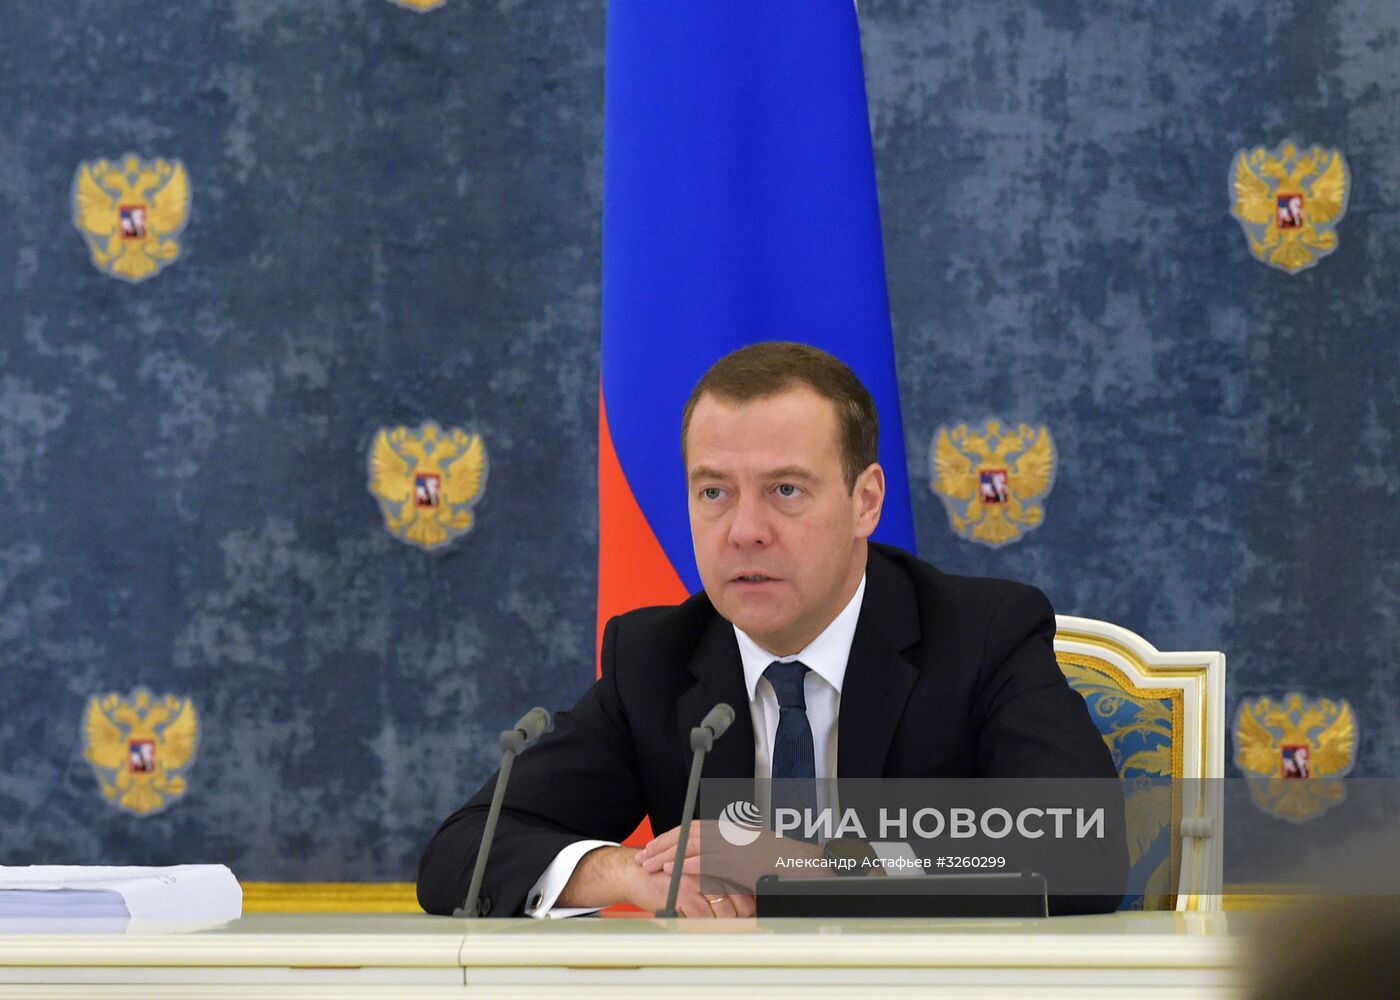 Премьер-министр РФ Д. Медведев провел заседание правительственной комиссии по применению ИТ для улучшения качества жизни